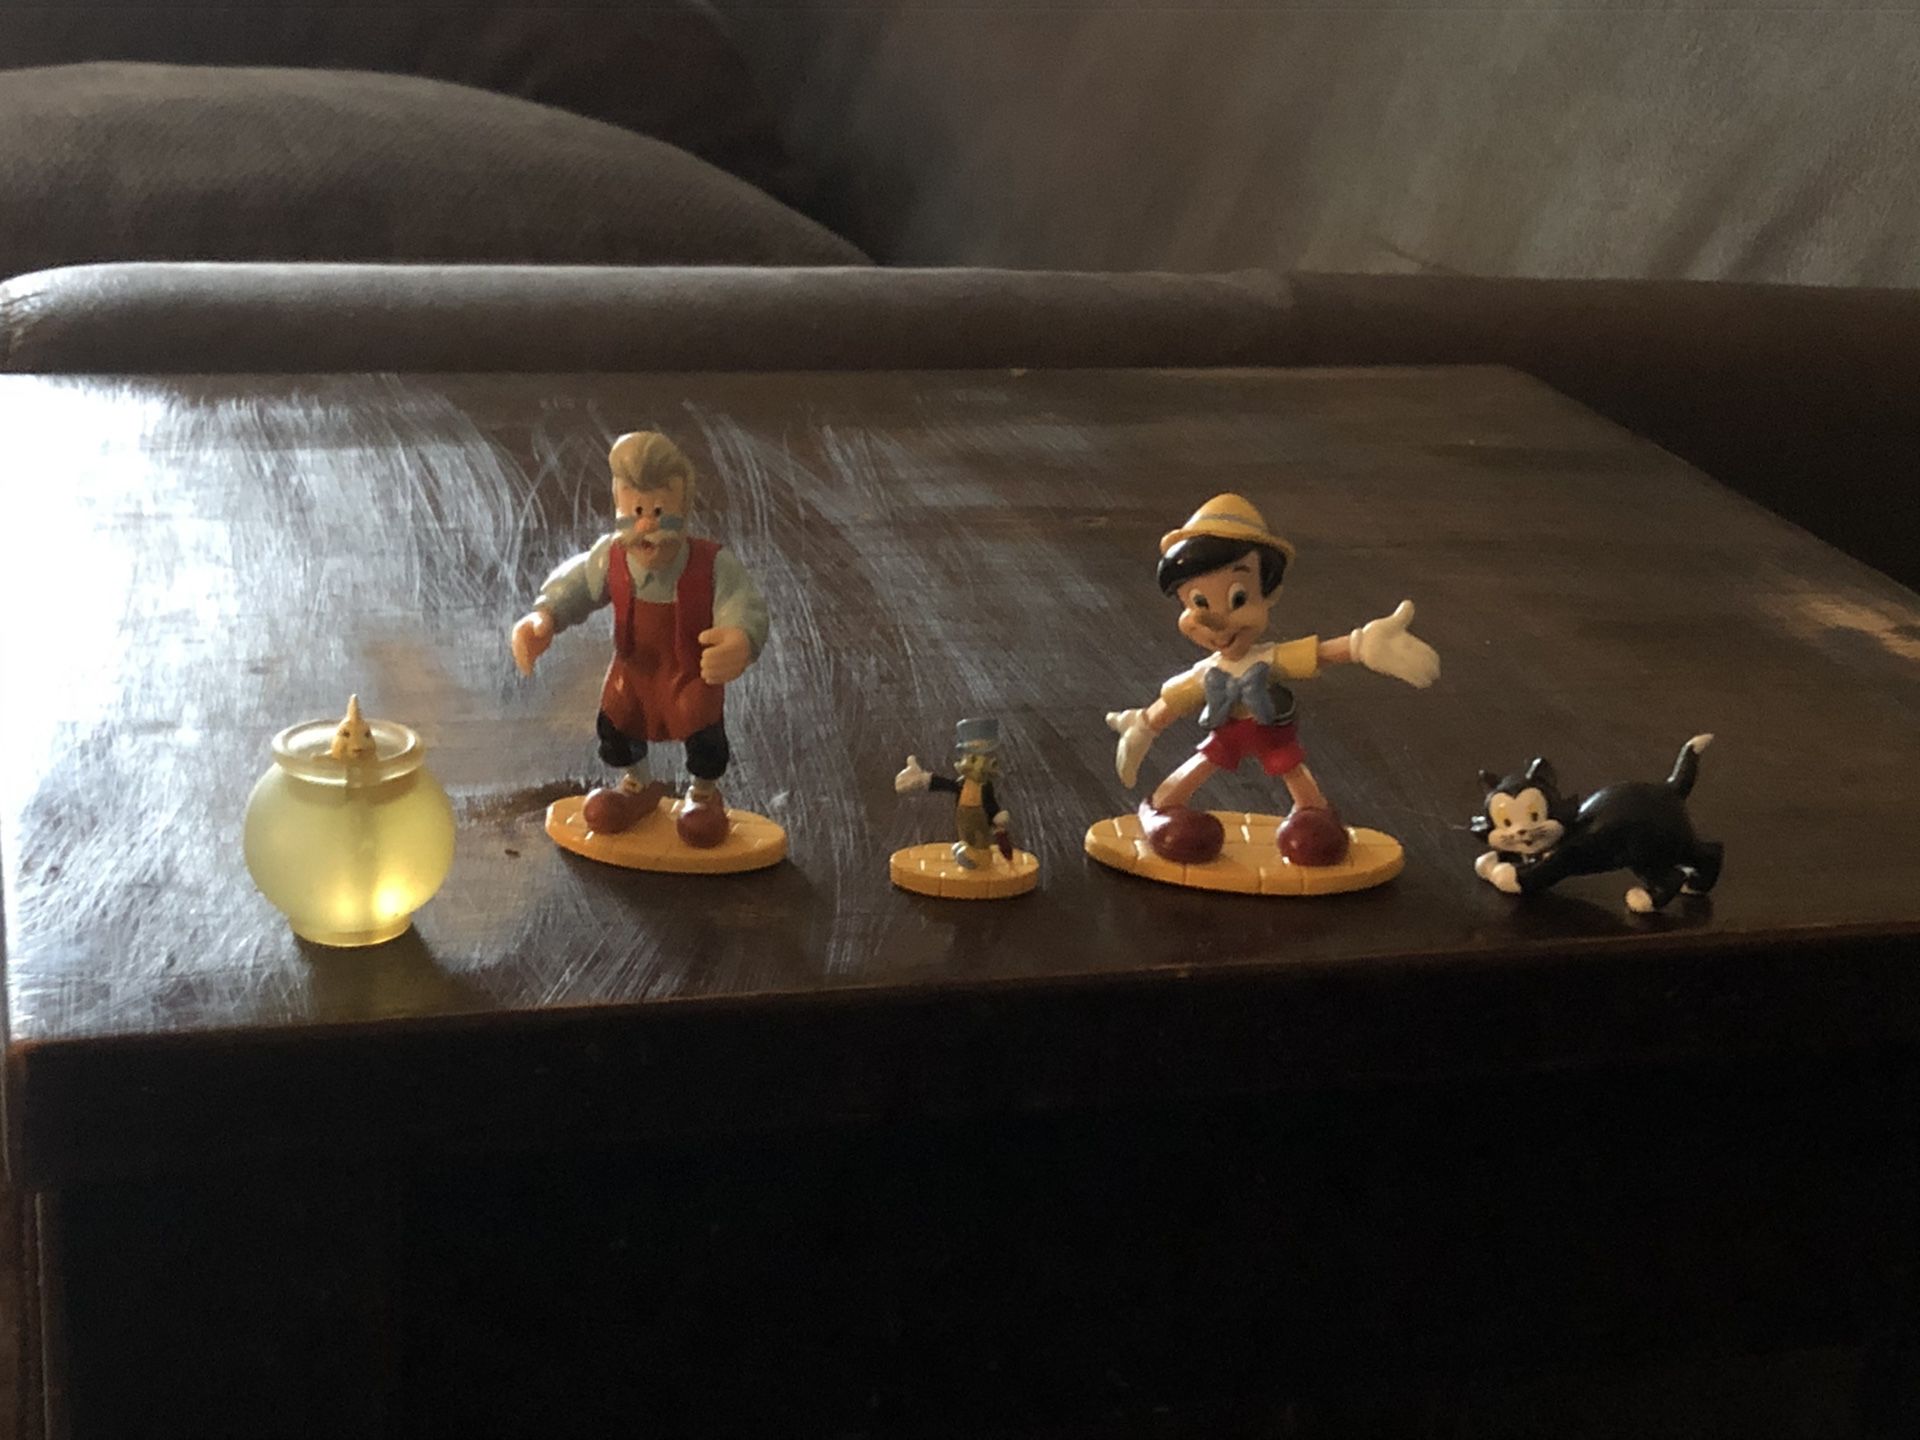 Disney’s Pinocchio figures